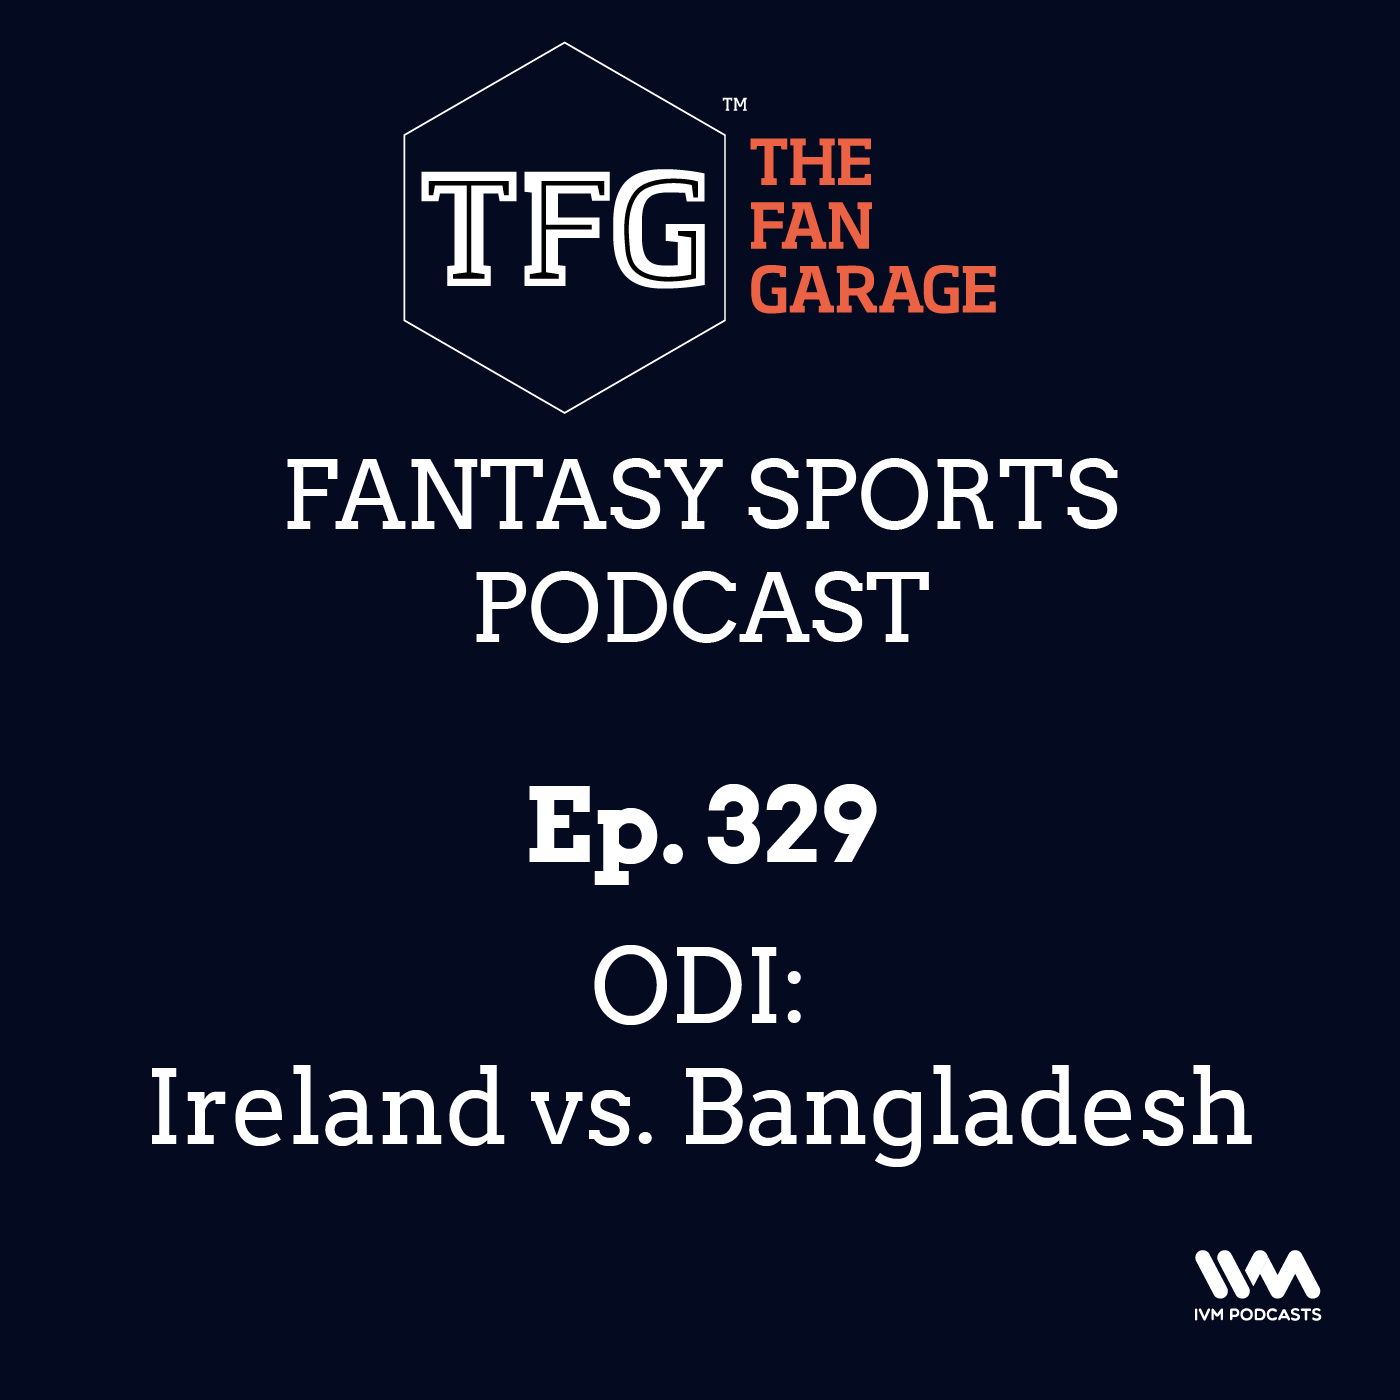 TFG Fantasy Sports Podcast Ep. 329: ODI: Ireland vs. Bangladesh